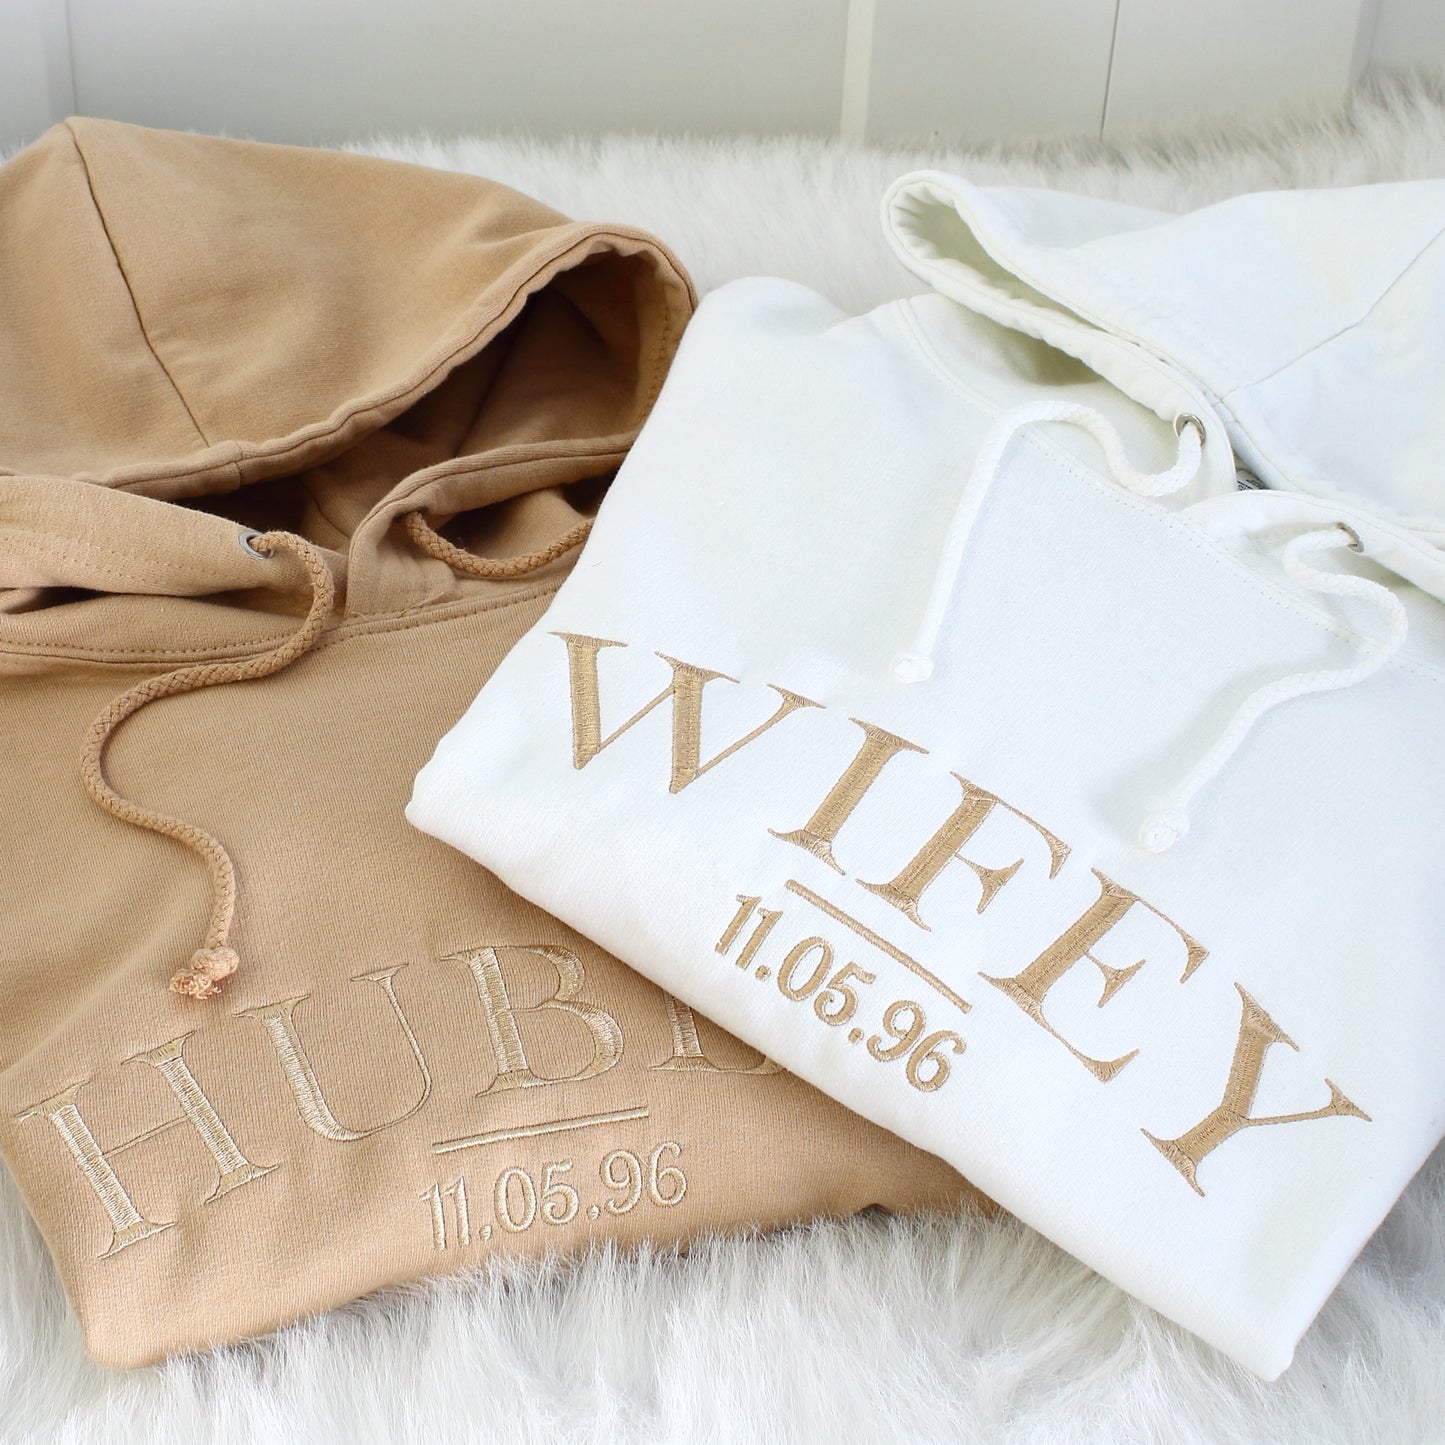 NEW - Wifey Hubby Hoodies & Sweatshirts